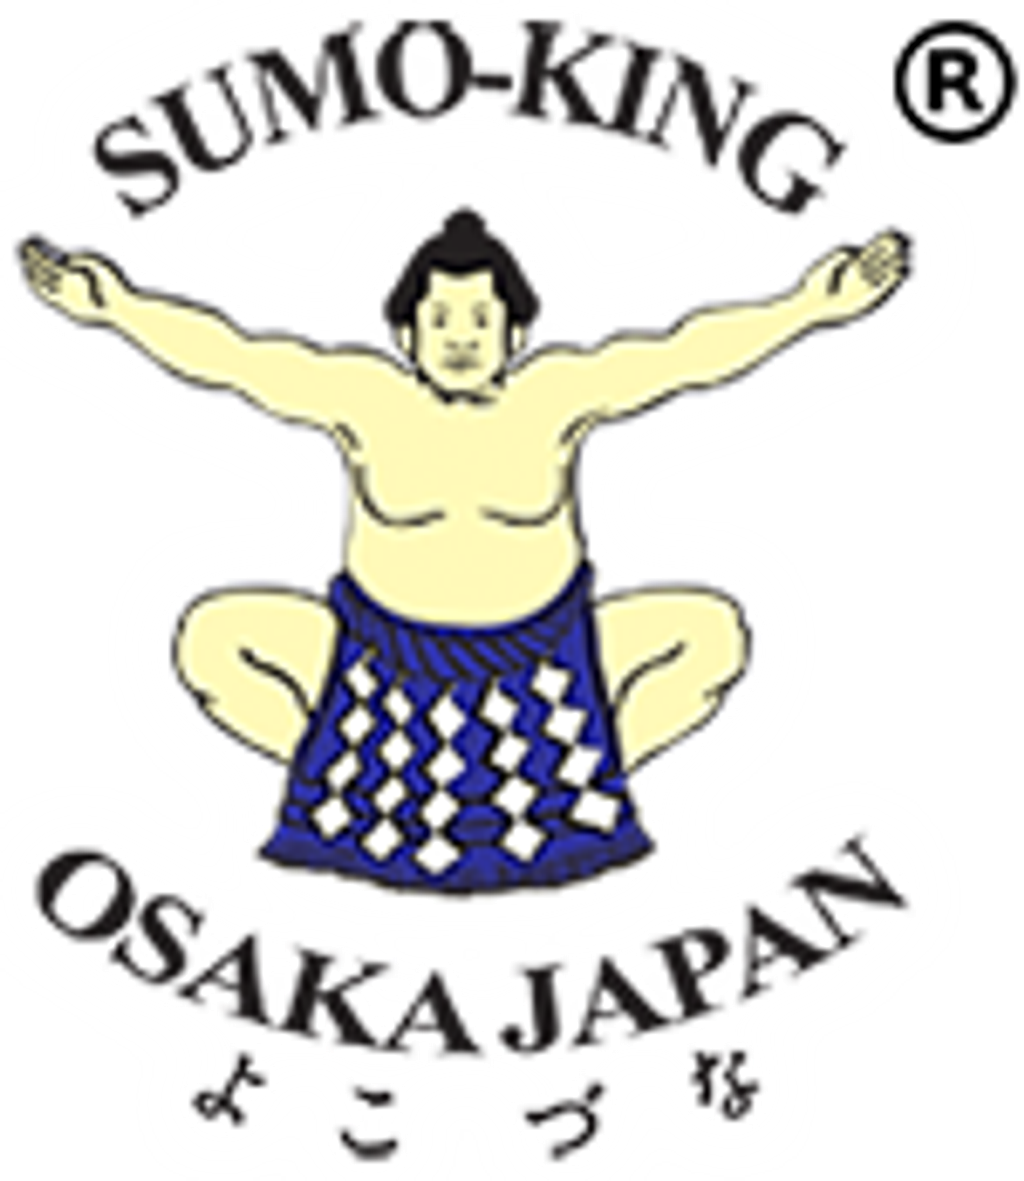 Logo-sumo-king.png